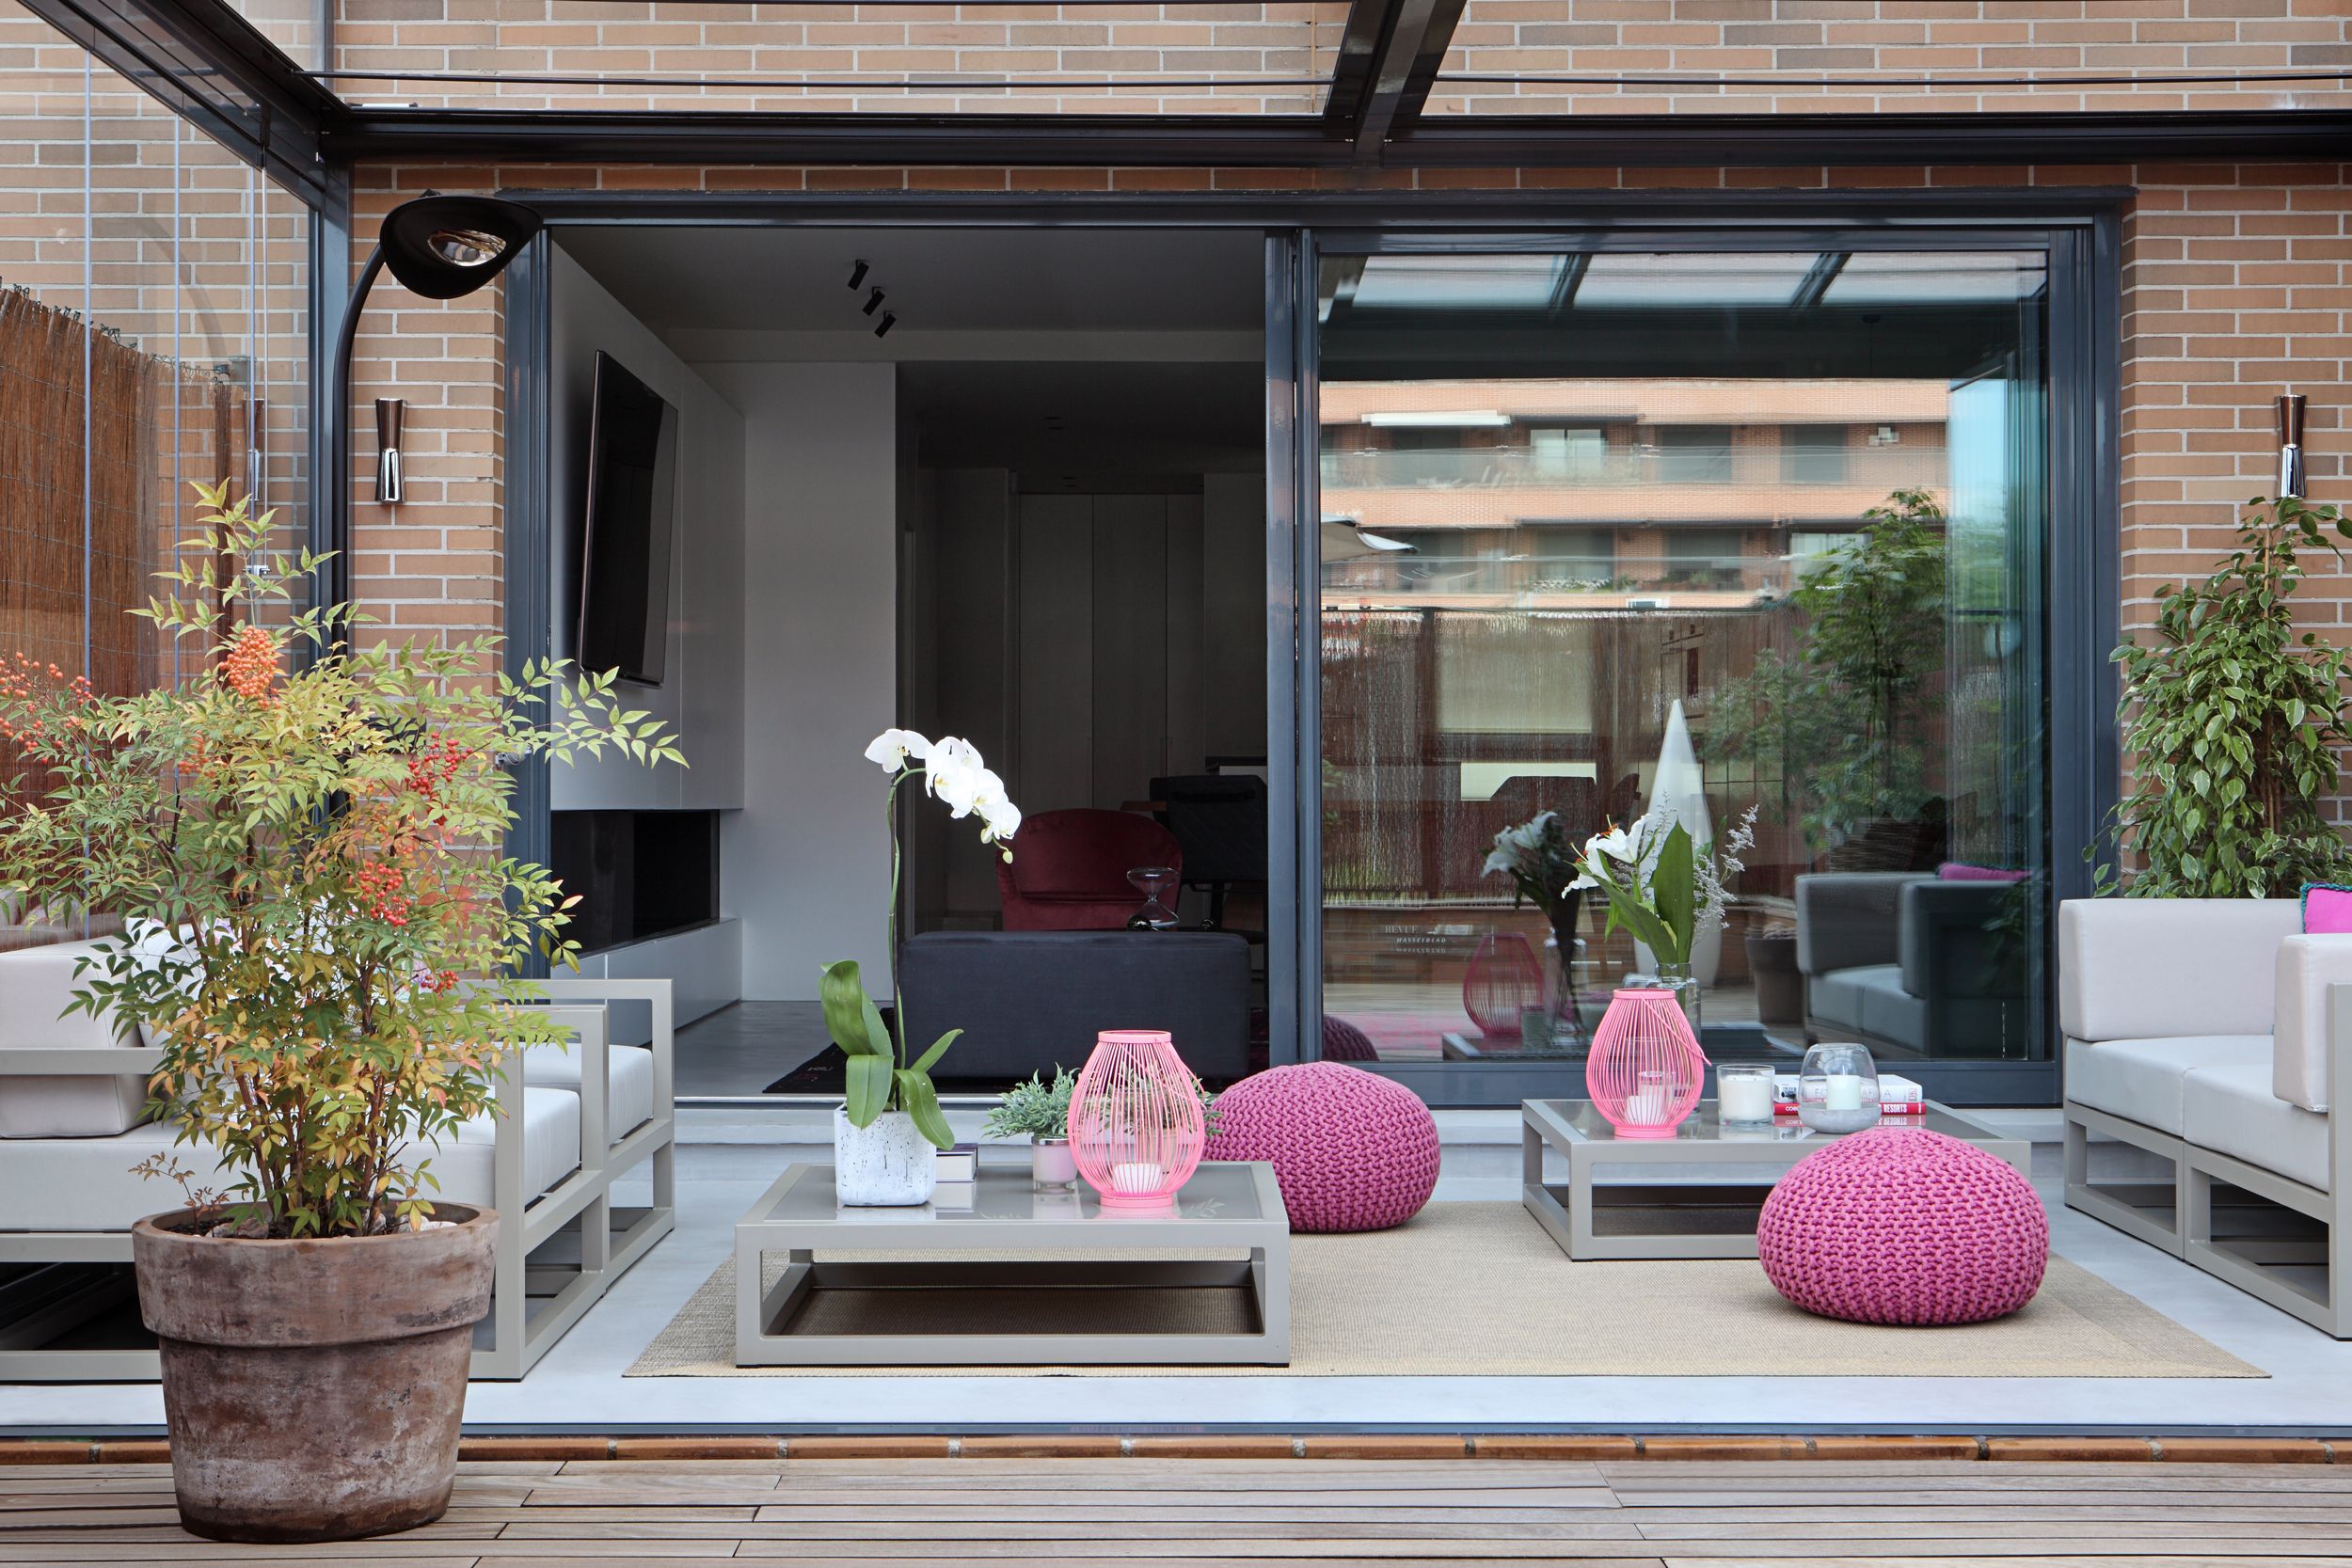 Un dúplex con terraza con estilo moderno en rosa y gris